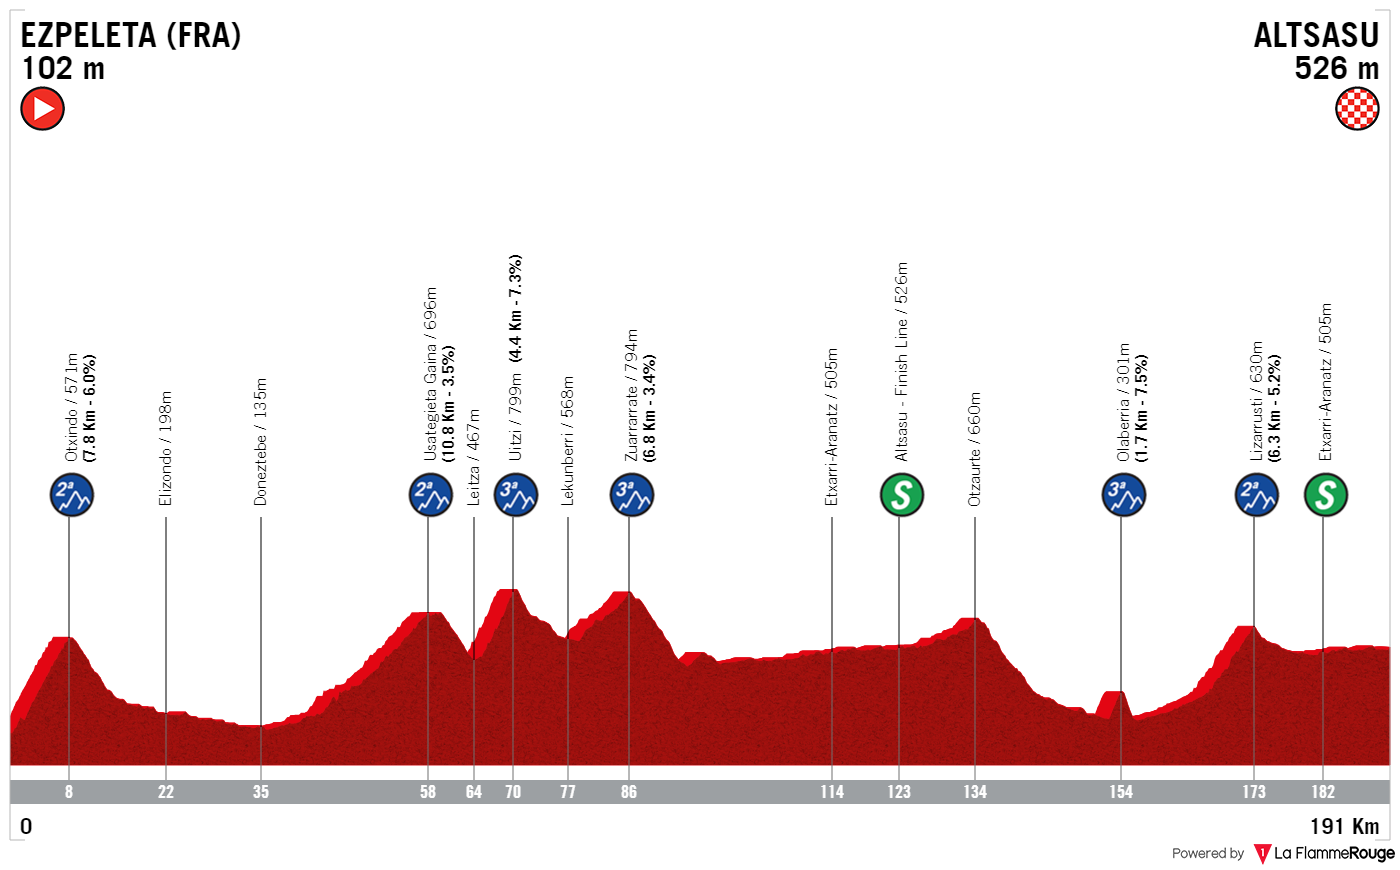 ANTEVISÃO - Volta ao País Basco 3ª etapa - Numa etapa montanhosa, teremos mais uma chegada ao sprint?